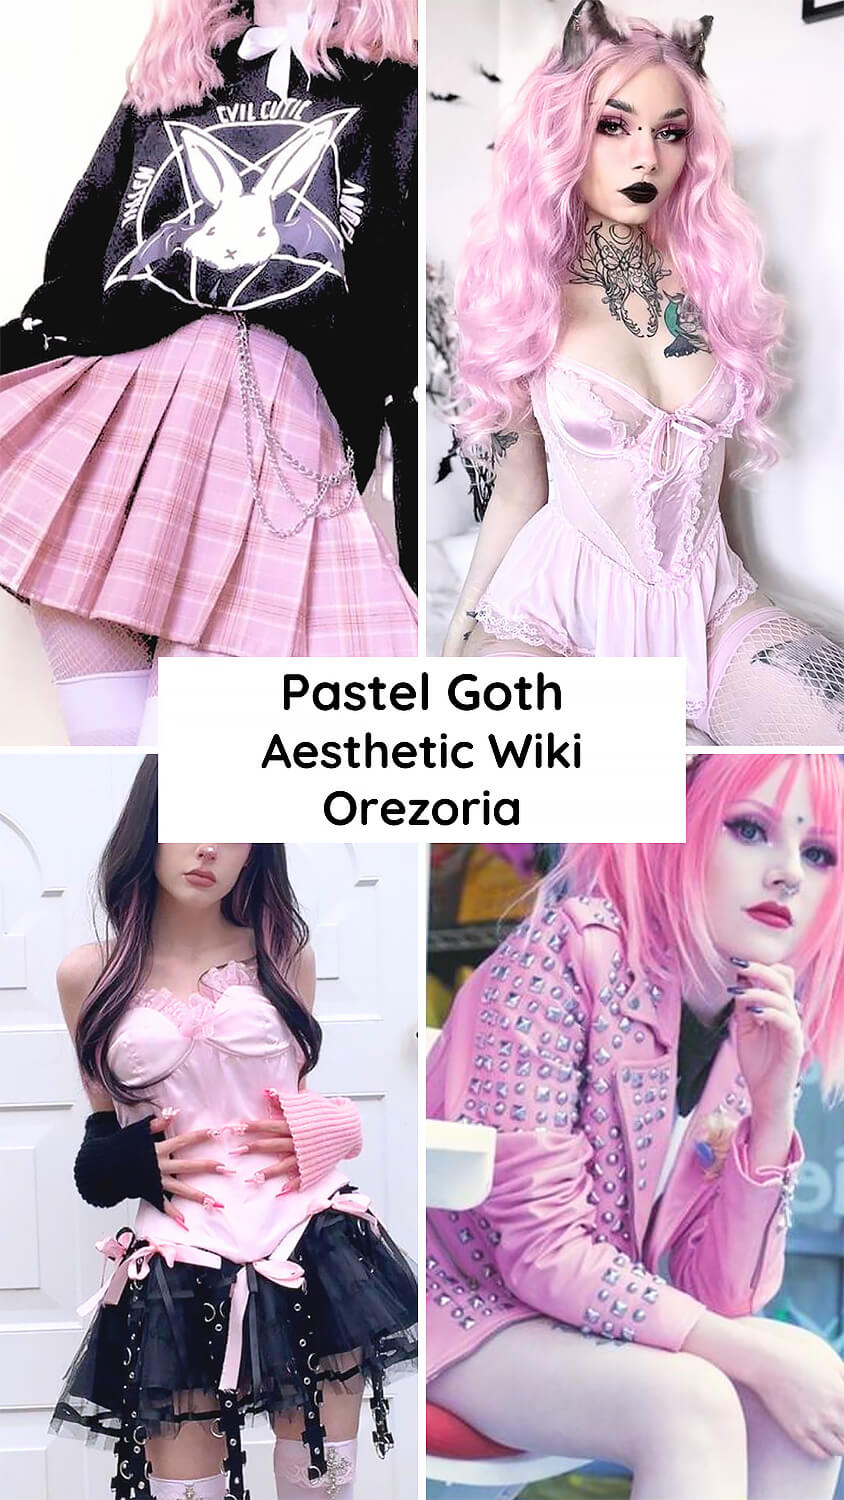 Sweet Lolita, Aesthetics Wiki